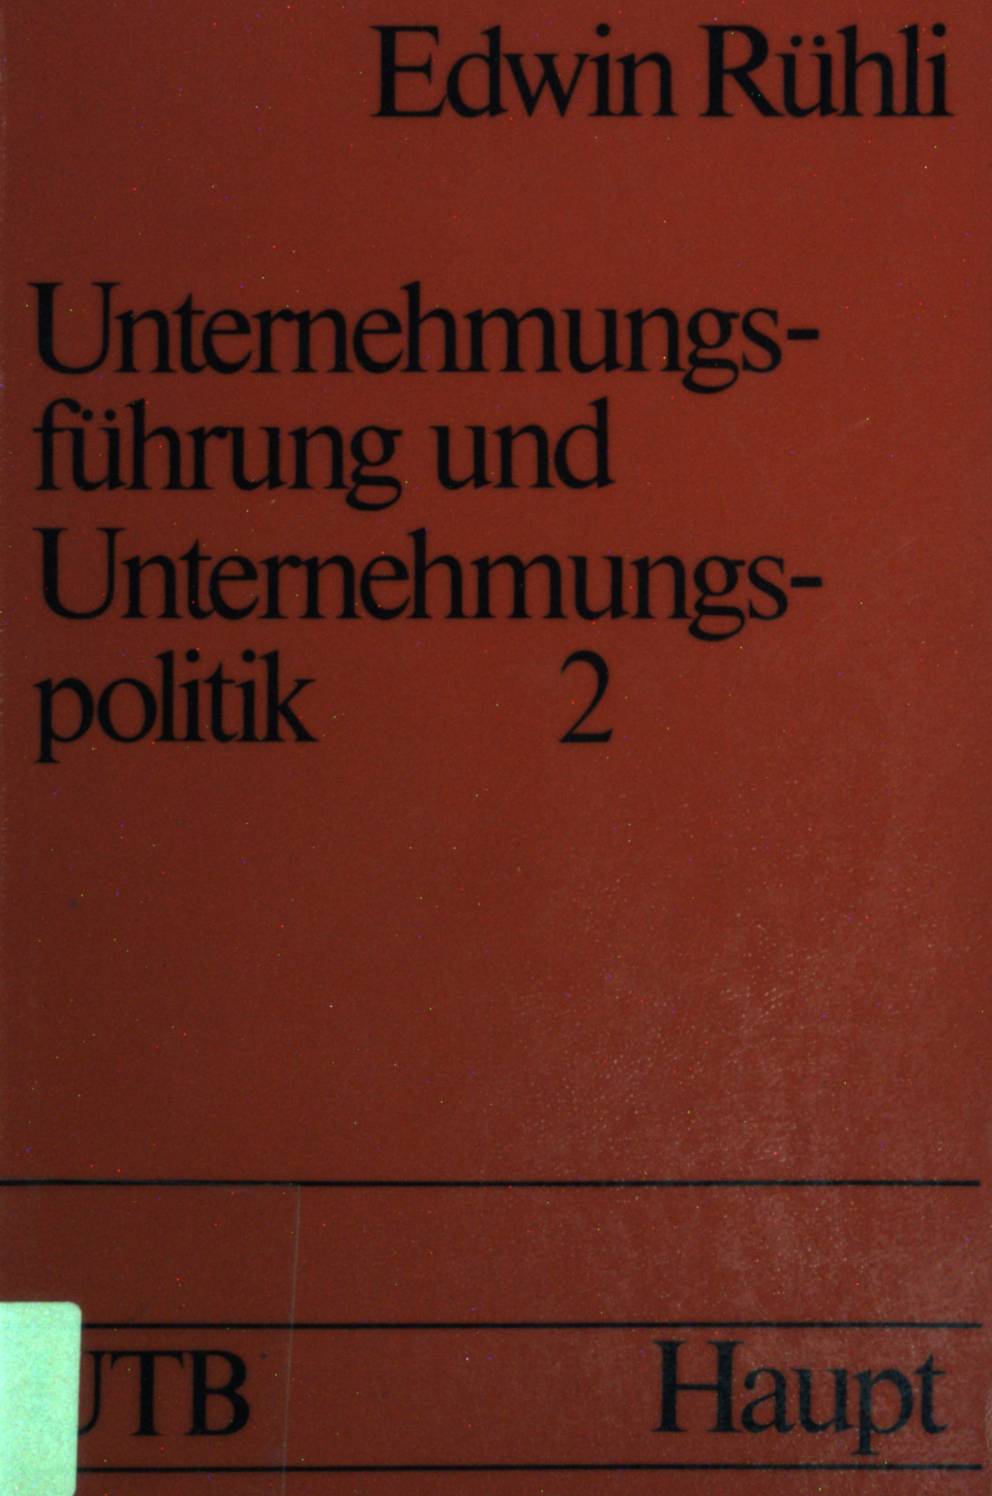 Unternehmungsführung und Unternehmungspolitik Bd. 2. UTB (Nr. 645) - Rühli, Edwin